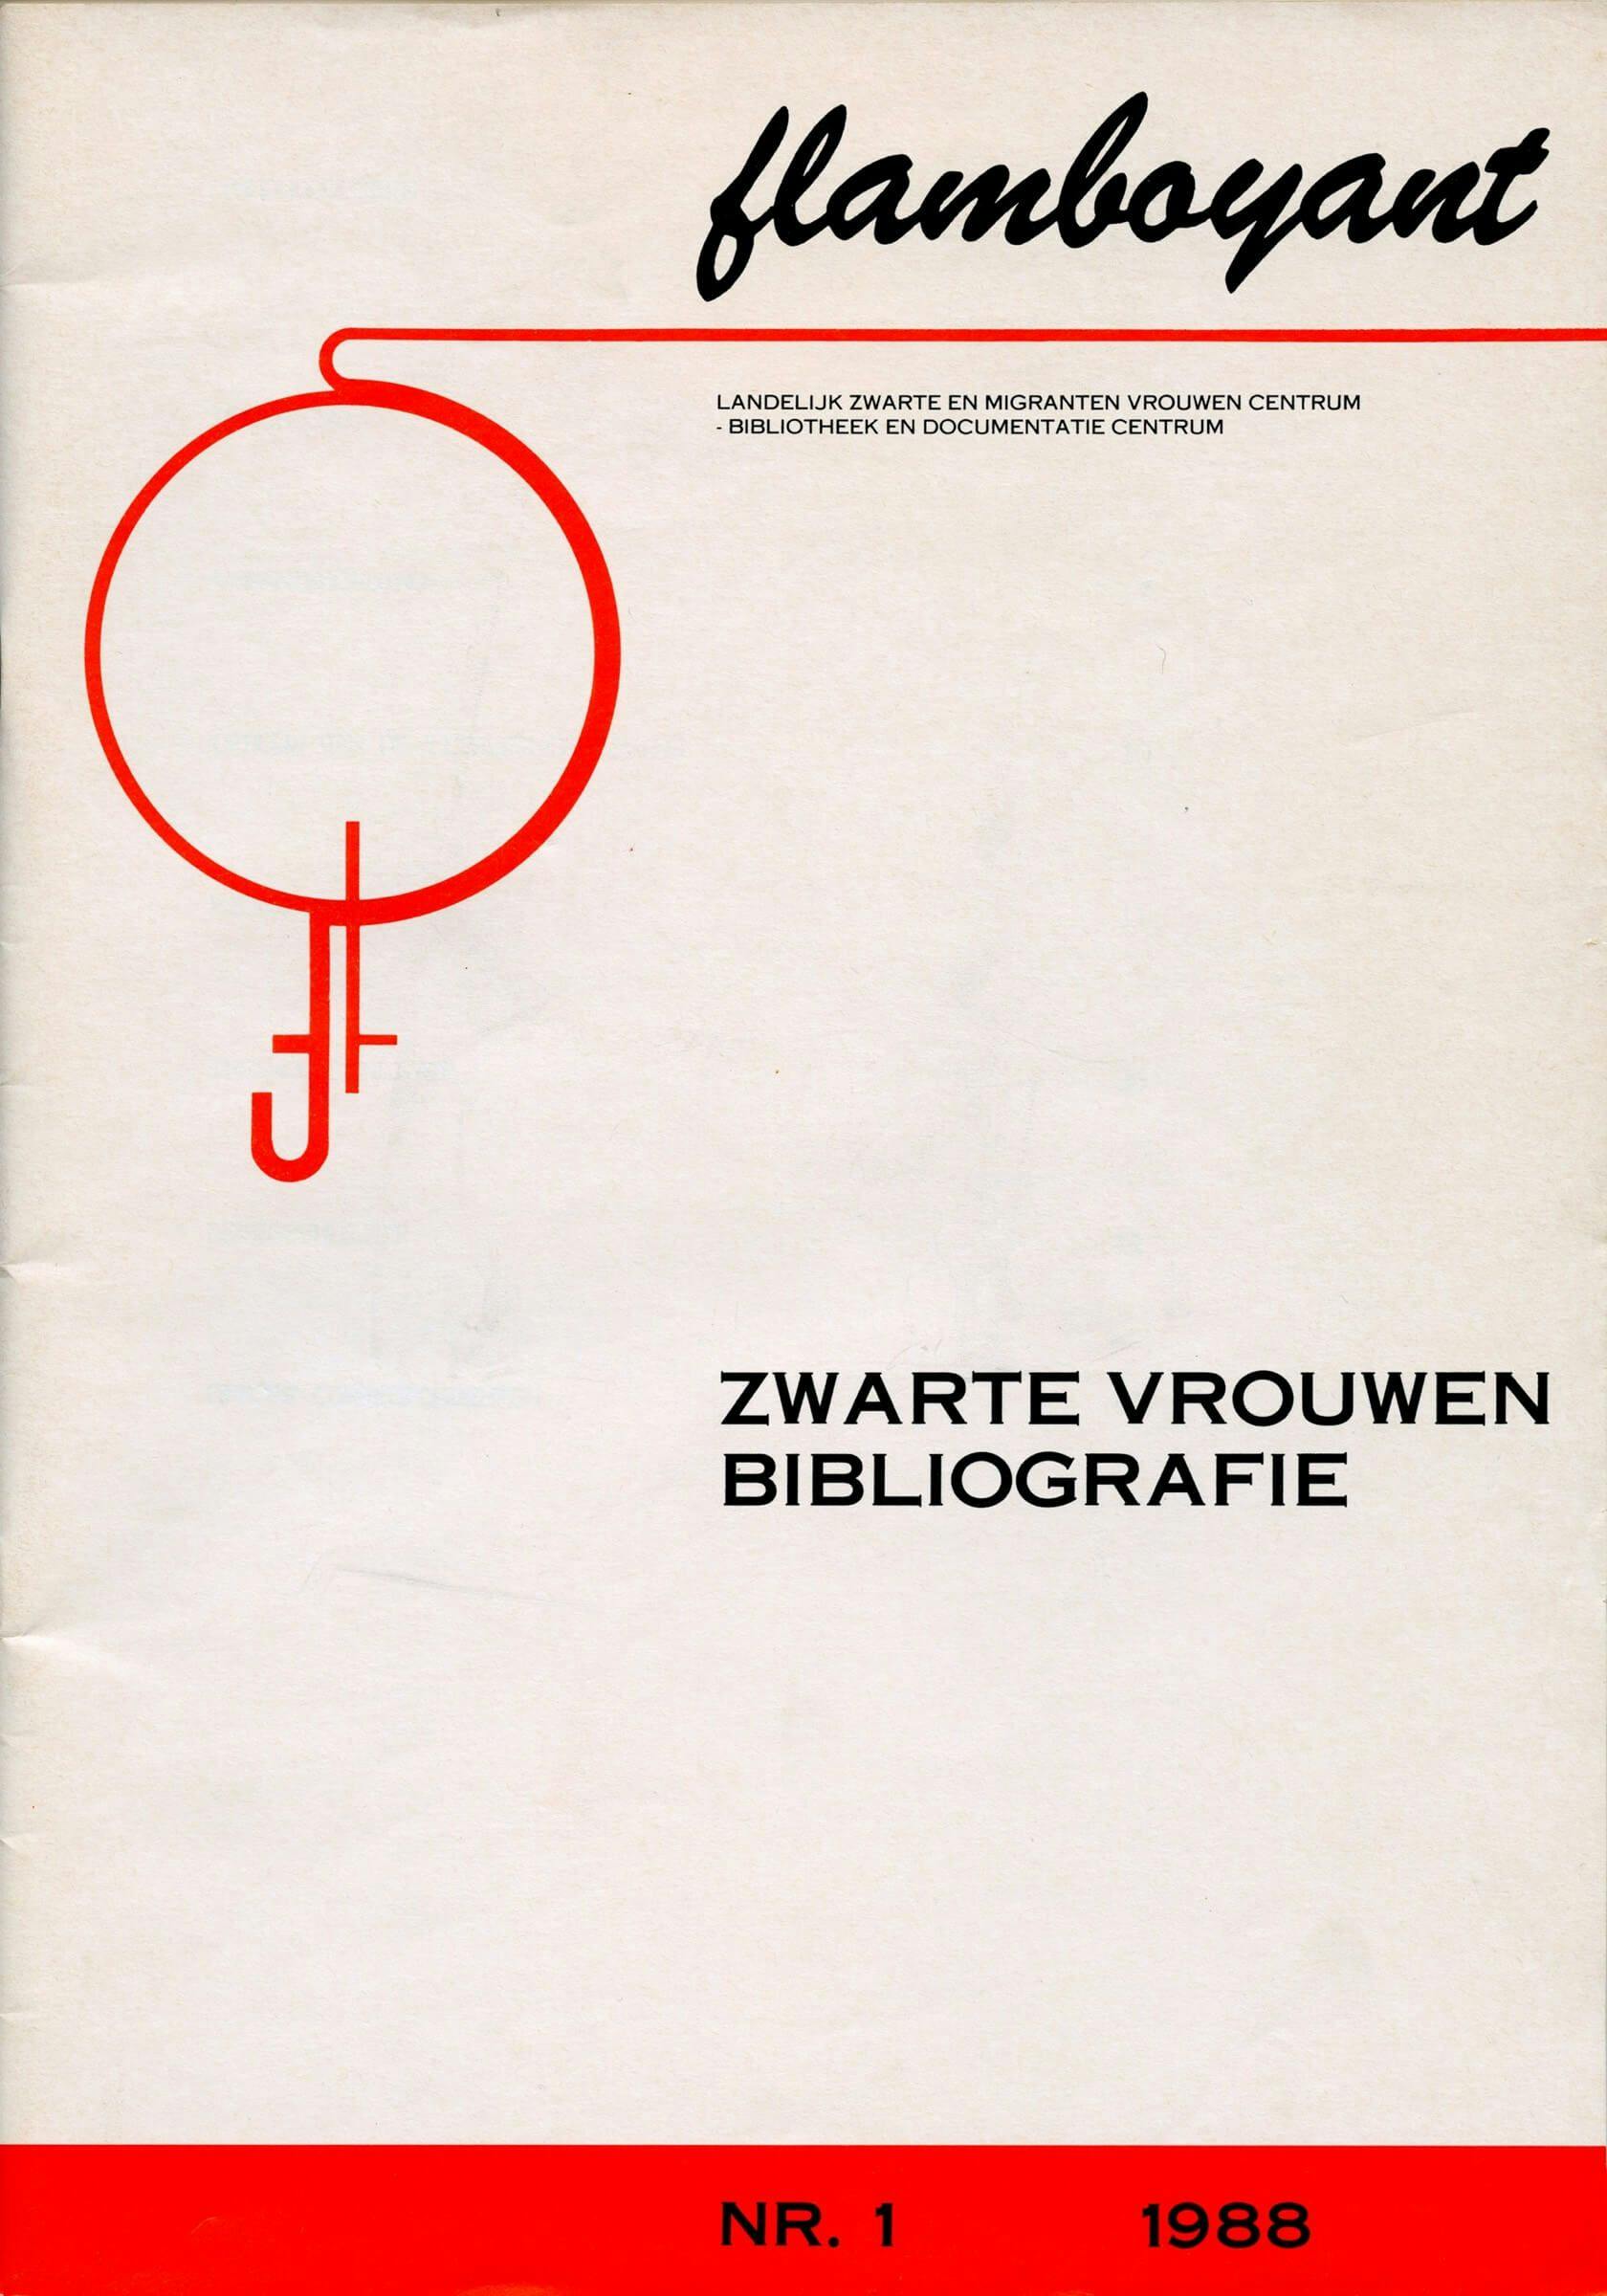 Cover “Zwarte vrouwen bibliografie”, gepubliceerd door Flamboyant Landelijk Zwarte en Migranten Vrouwen Centrum – Bibliotheek en Dokumentatie Centrum, nr. 1, 1988. Bron: Collectie IAV-Atria 